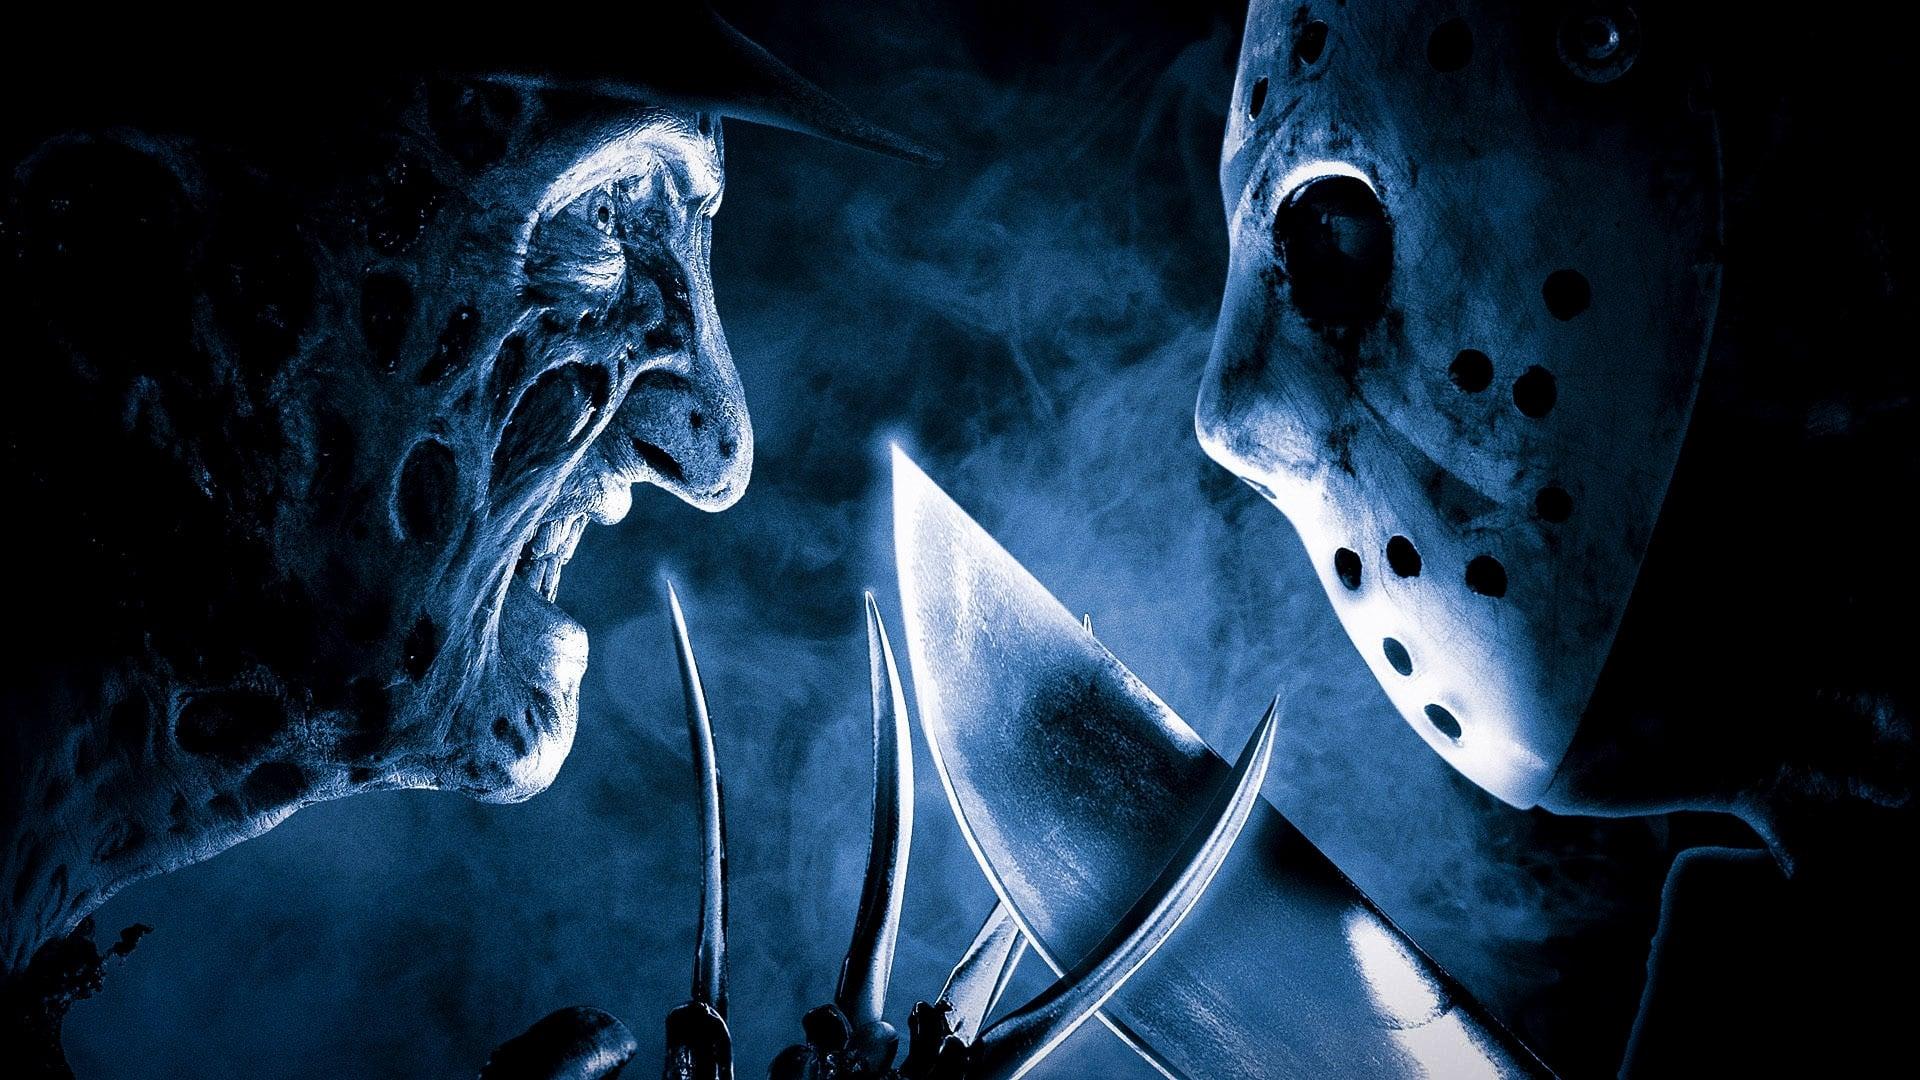 دانلود فیلم Freddy vs. Jason 2003